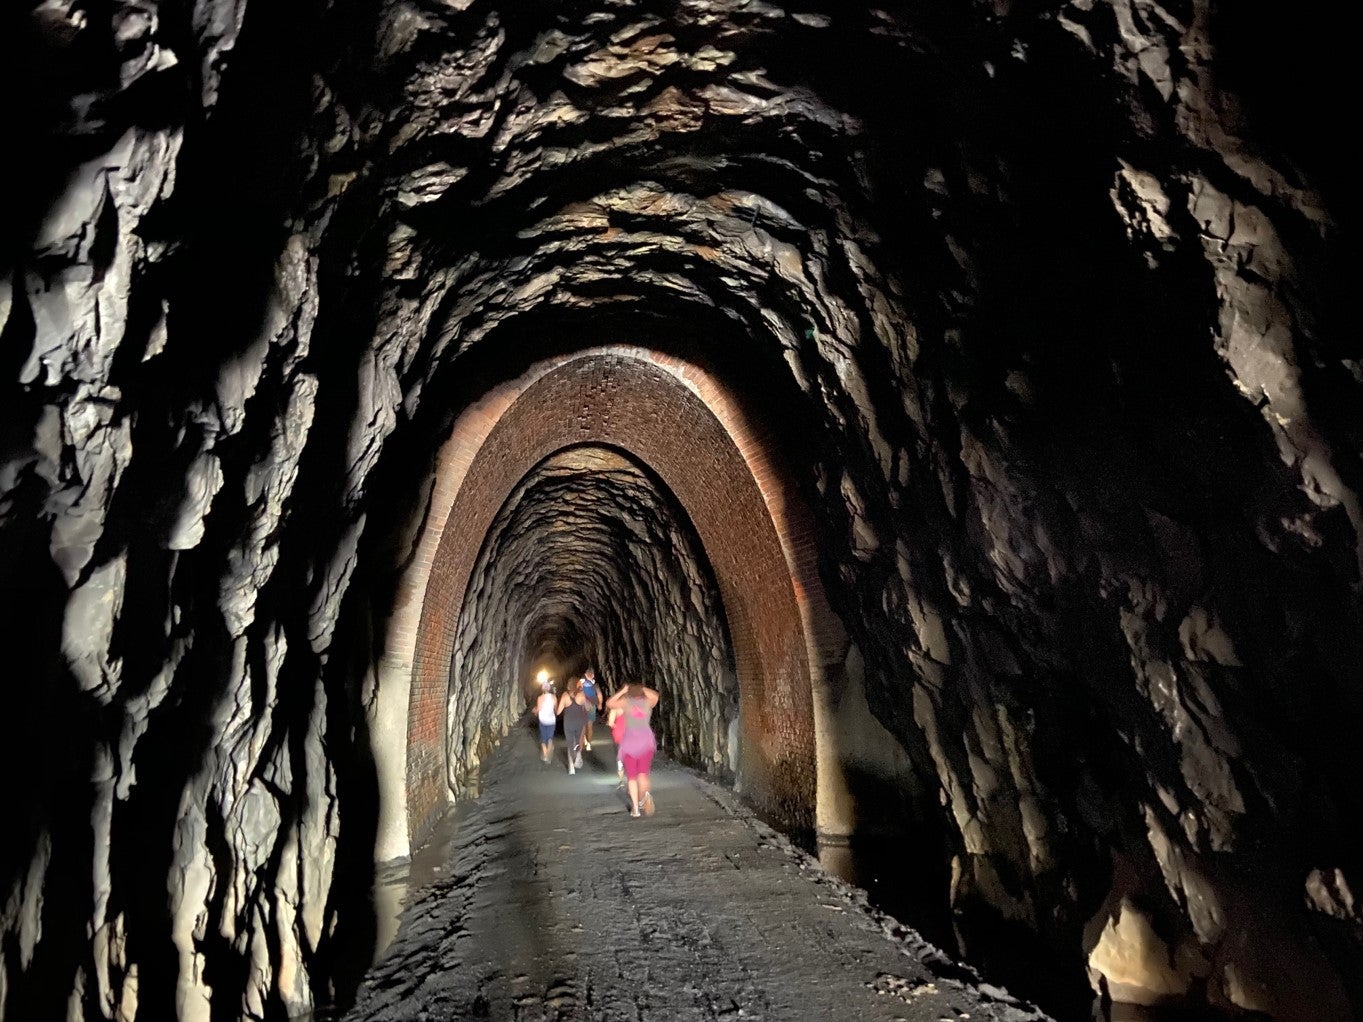 Hiking through a tunnel